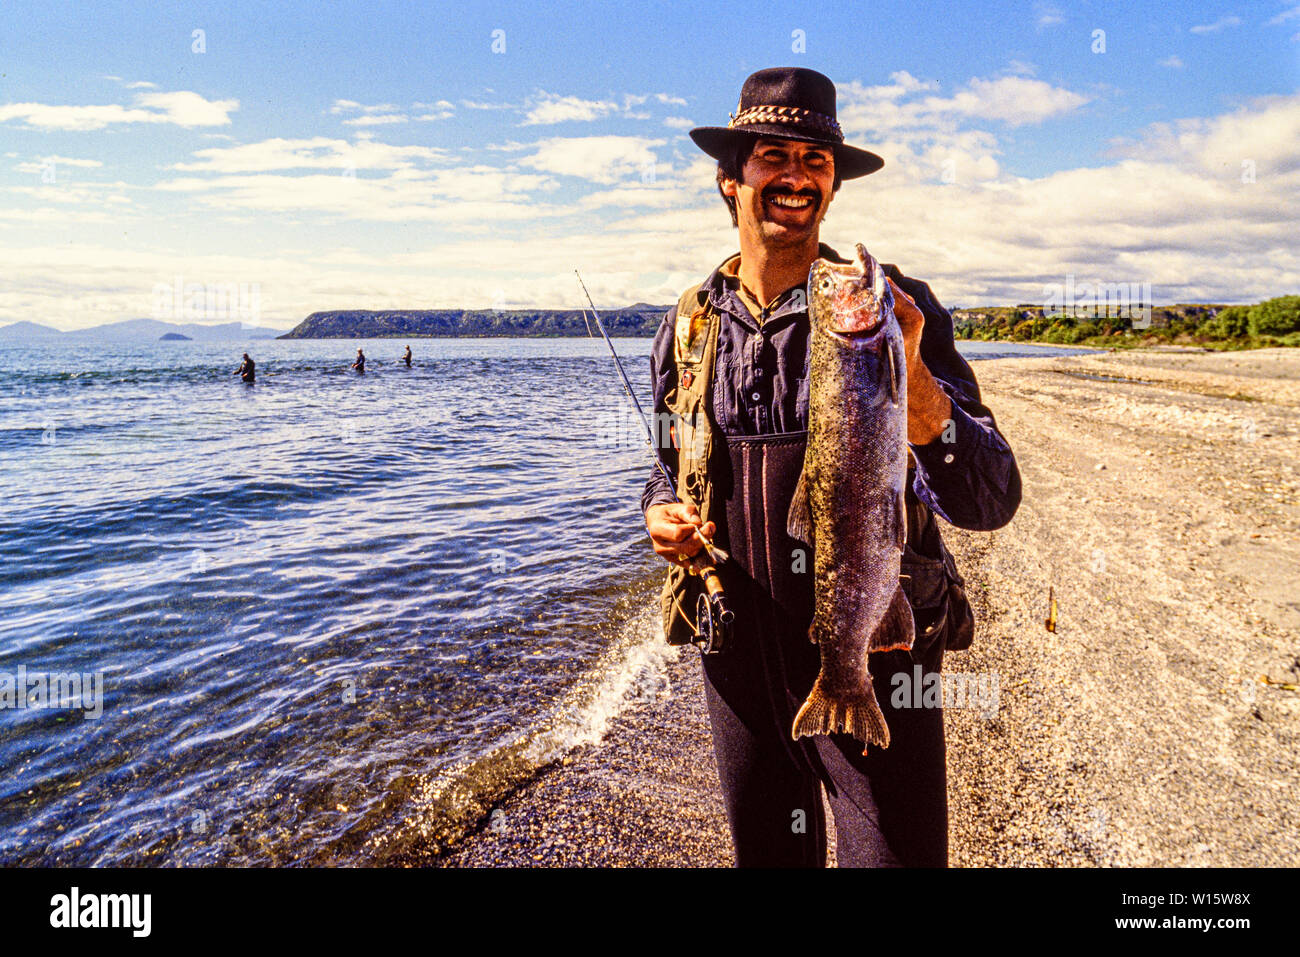 Nouvelle Zélande, île du Nord. Pêcheurs dans le lac Taupo, un relevé des stocks de pêche de la truite et de la truite brune introduit. Photo prise le 19 novembre Banque D'Images